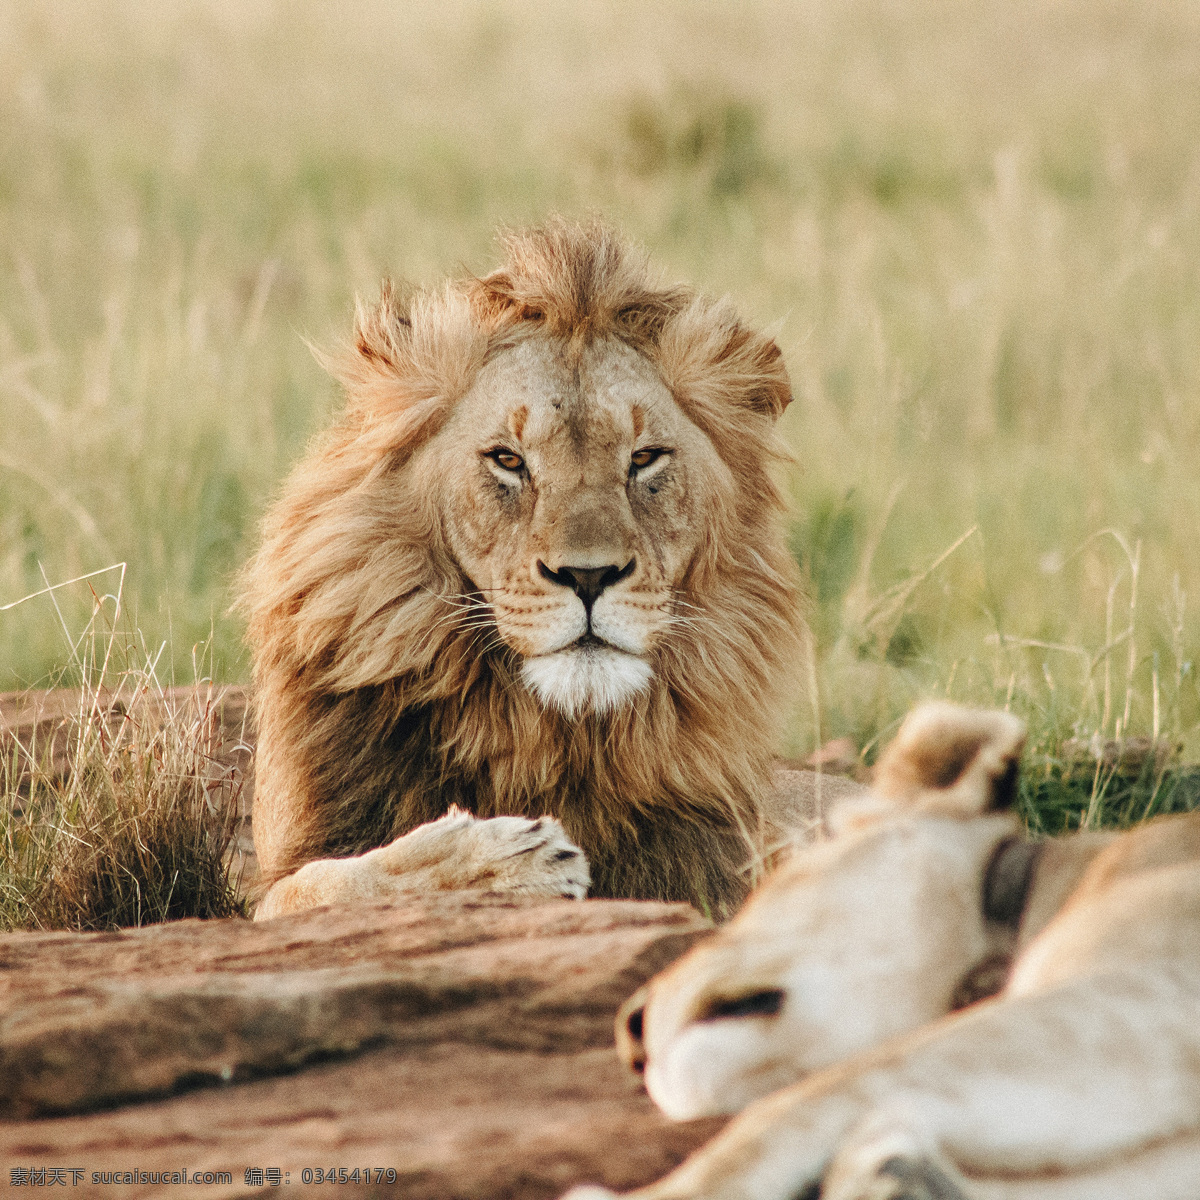 狮子图片 狮子 狮子王 母狮 幼狮 公狮 生物世界 野生动物